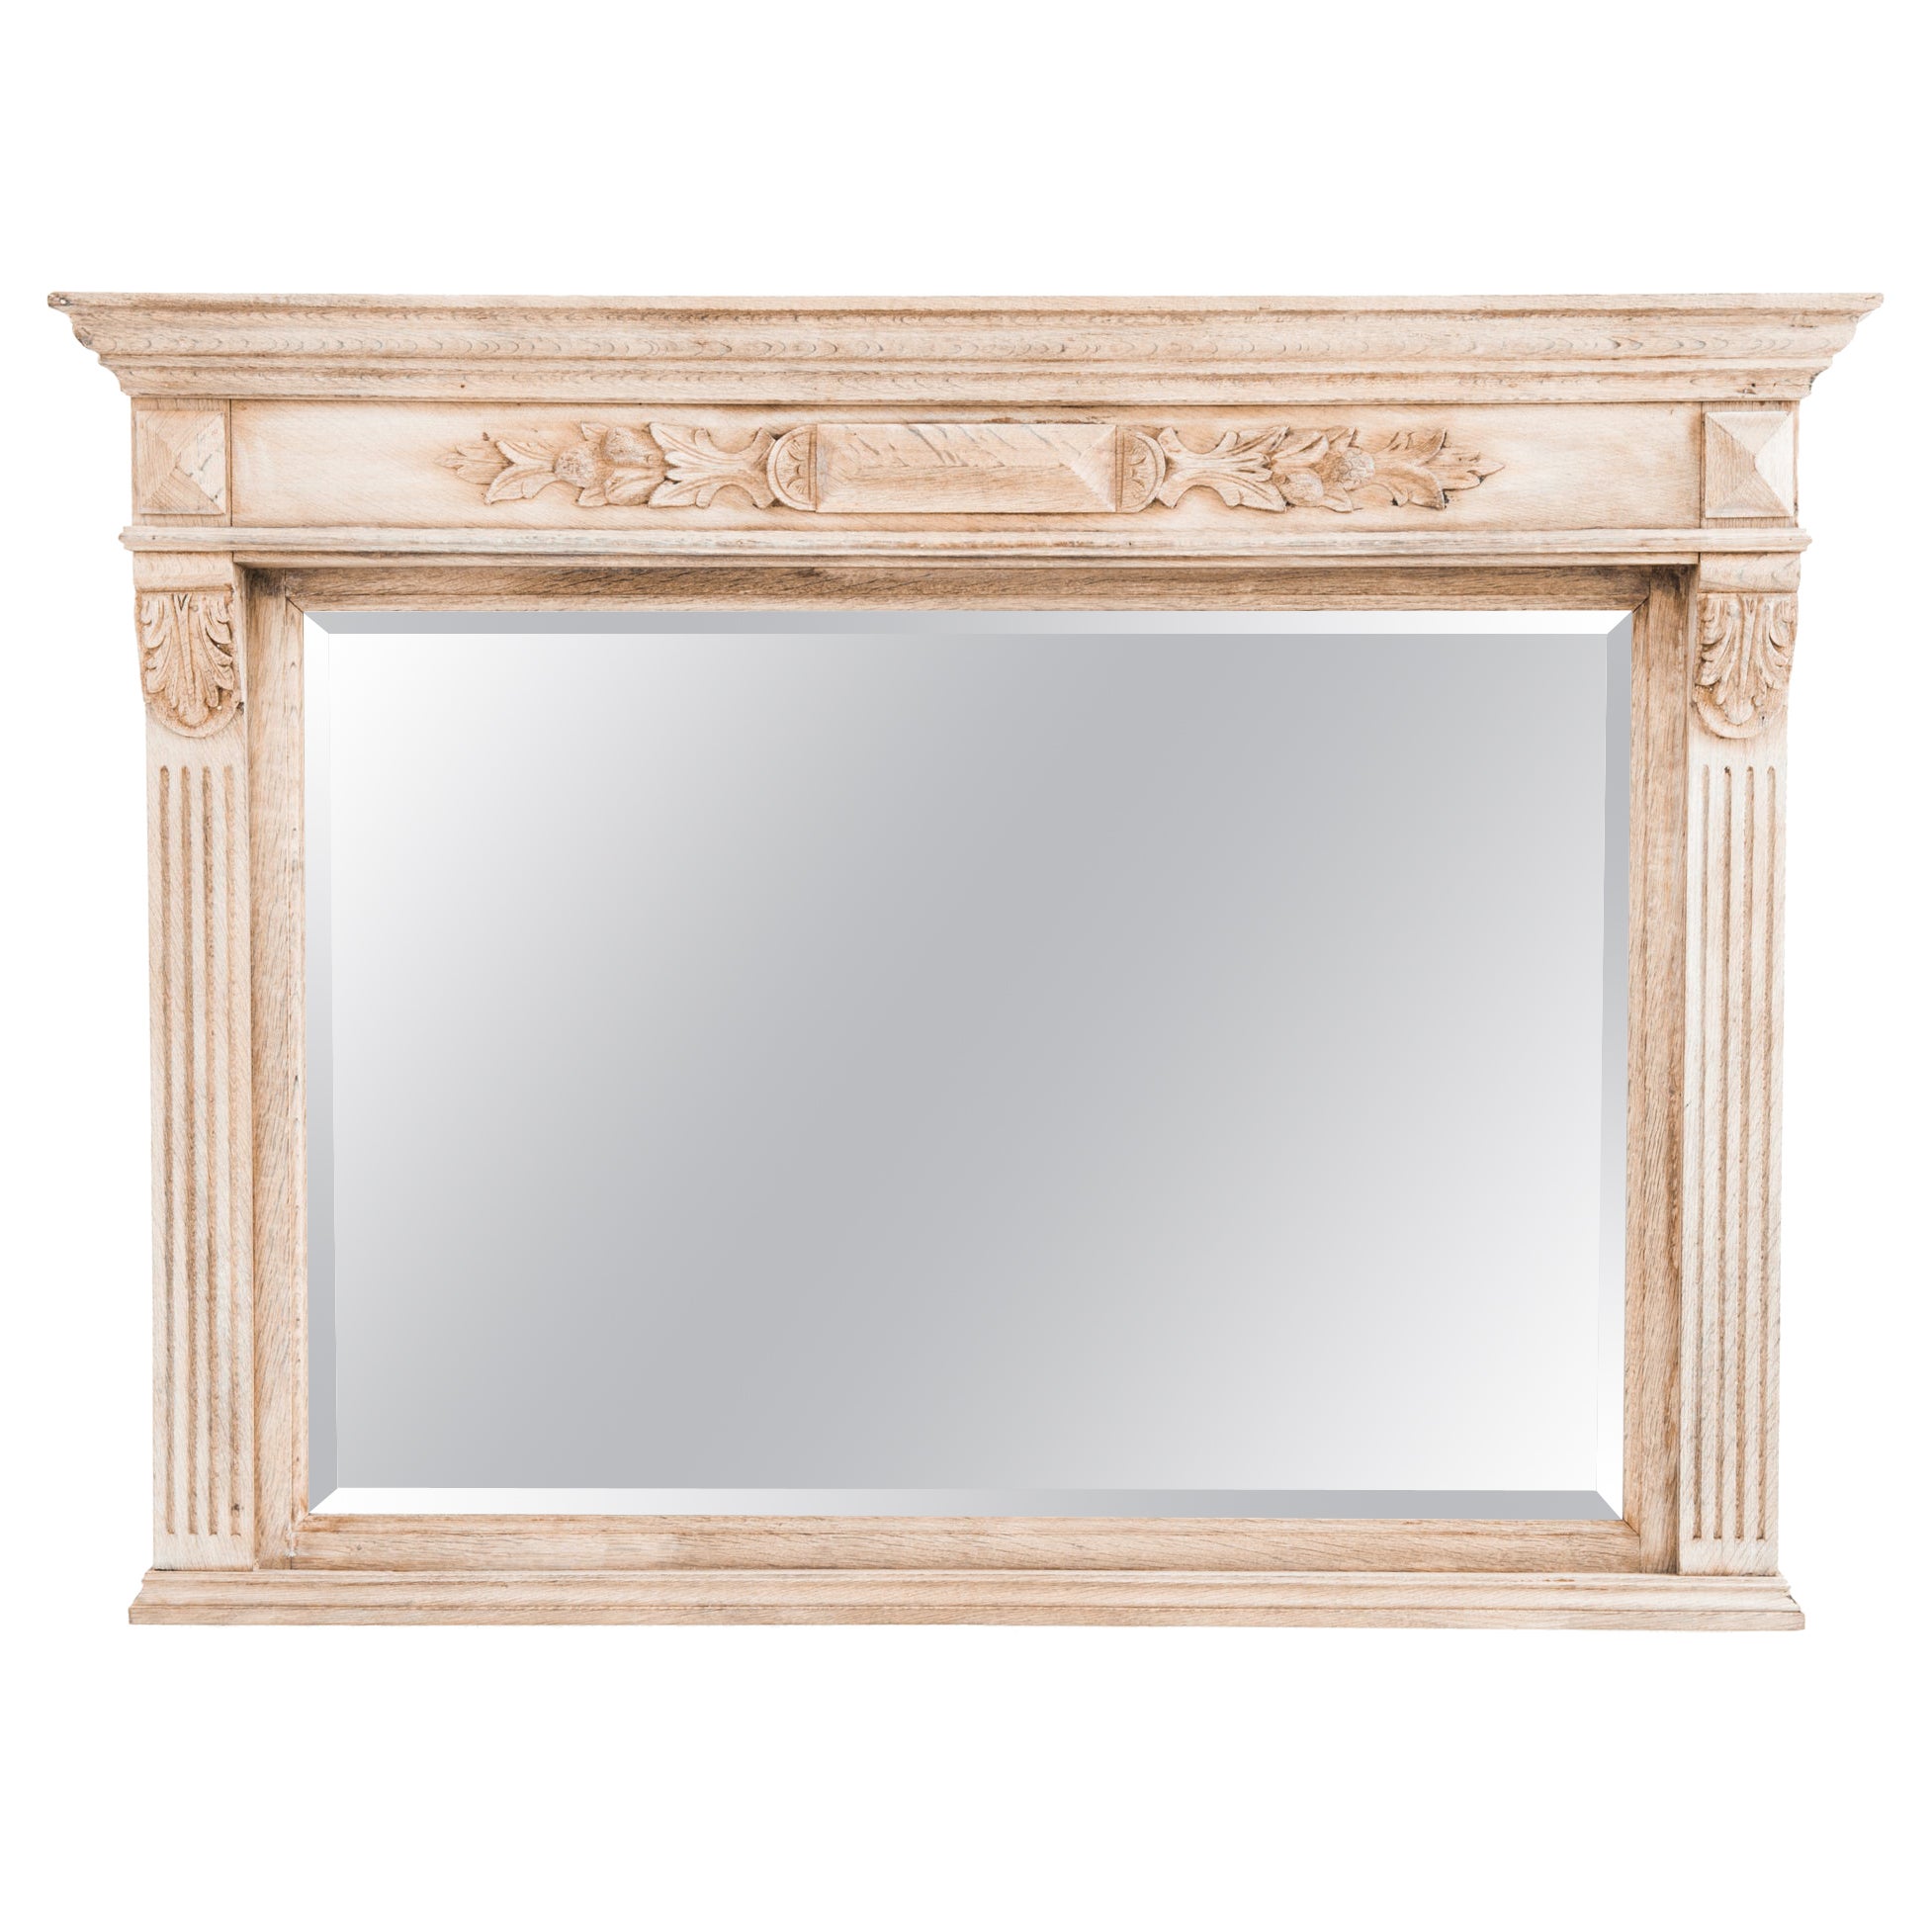 1900s Belgian Bleached Oak Mantel Mirror